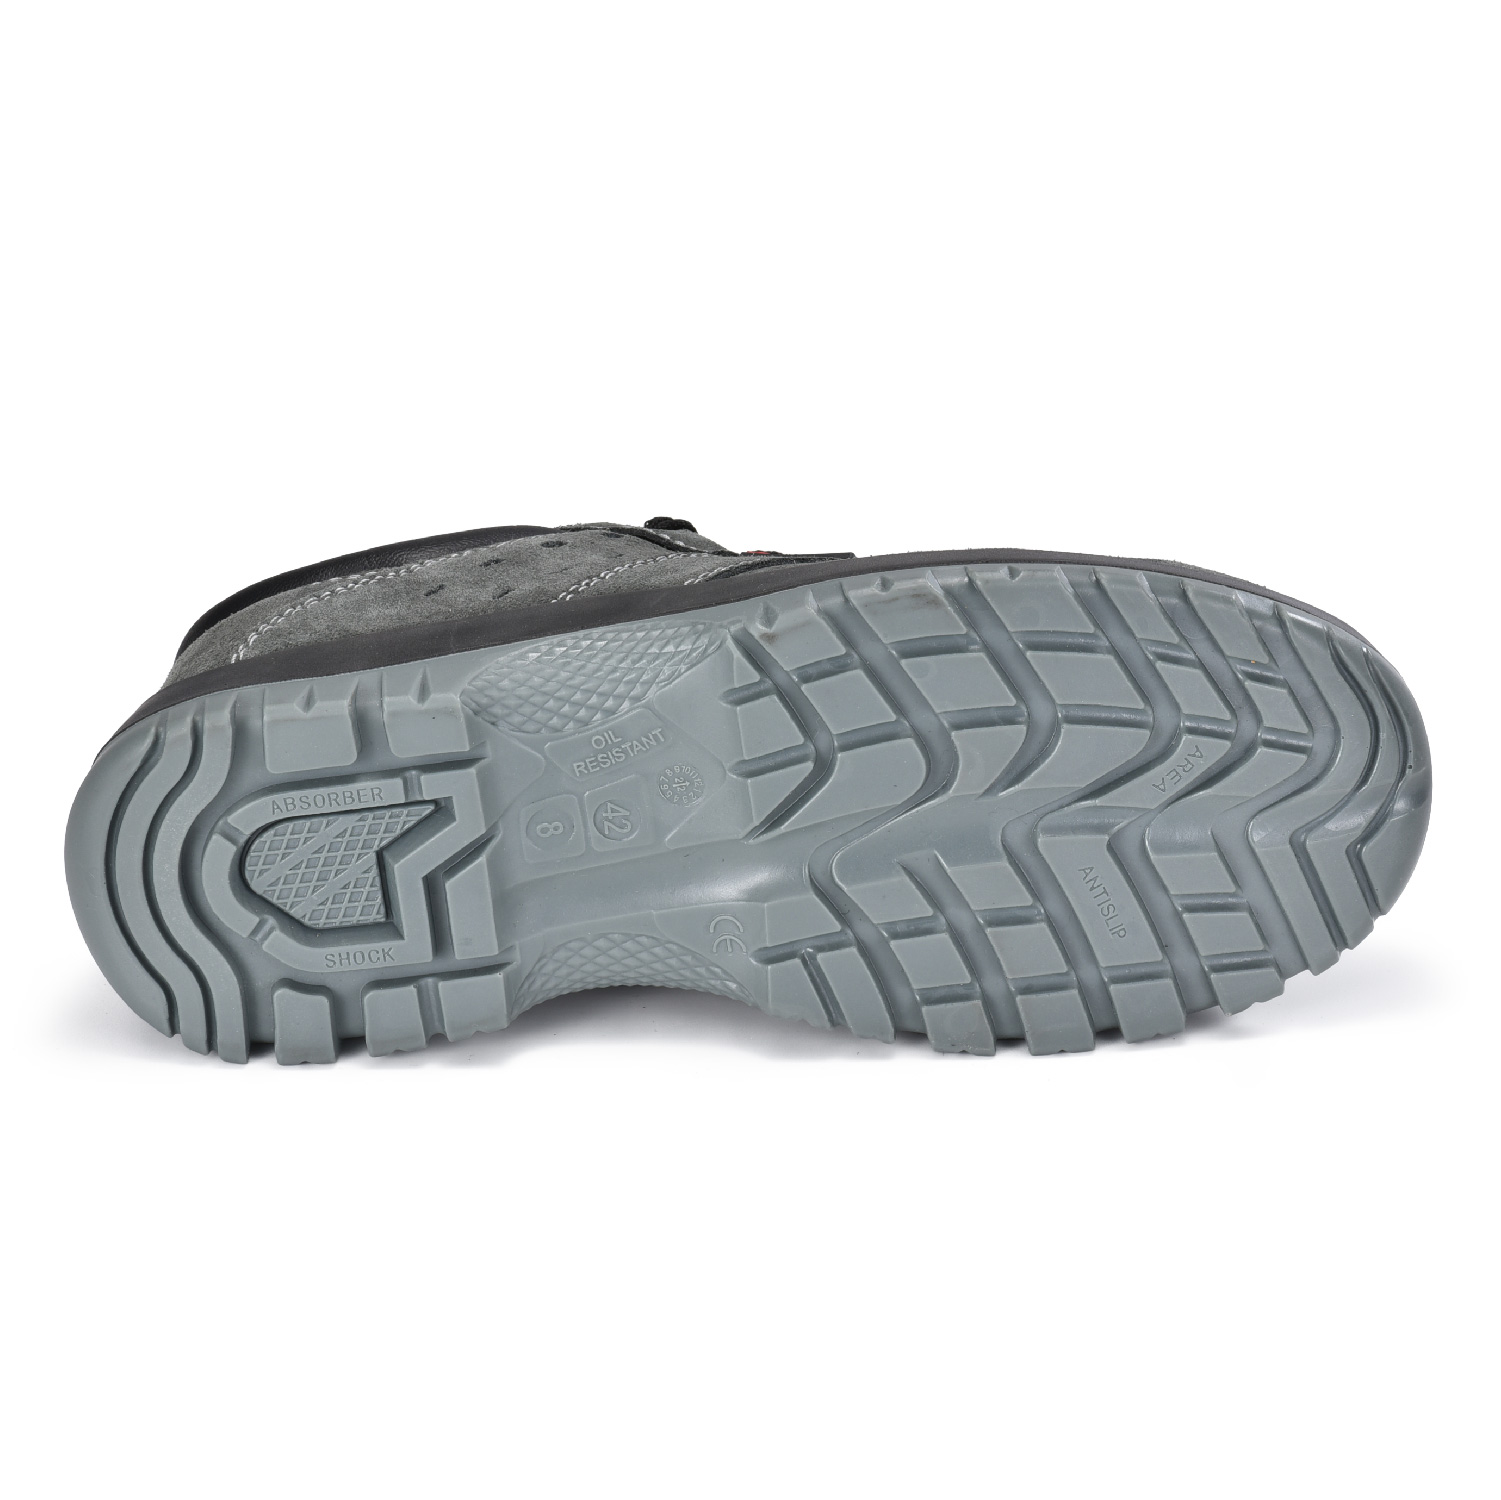 Zapatos de Seguridad Transpirables Summer S1P con Puntera de Acero L-7509